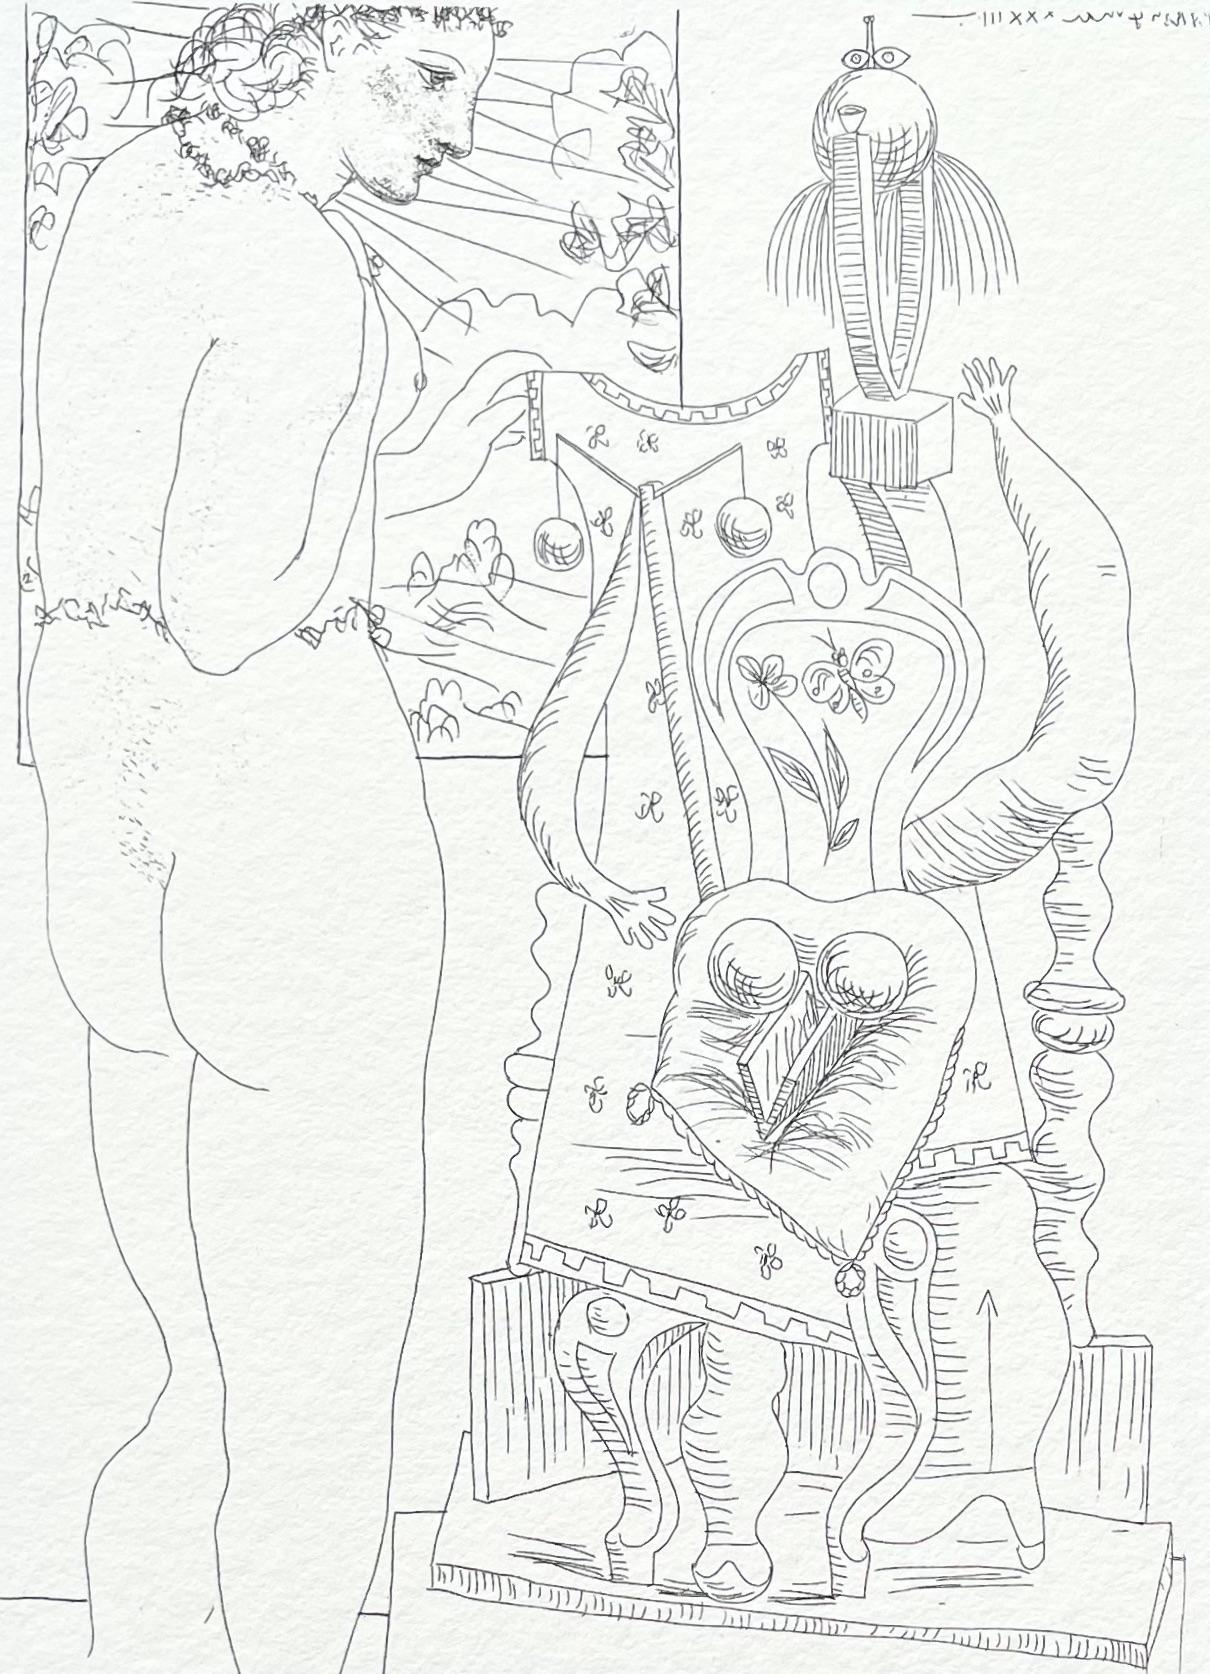 Picasso, Marie-Thérèse considérant son Effigie surréaliste sculptée (after)